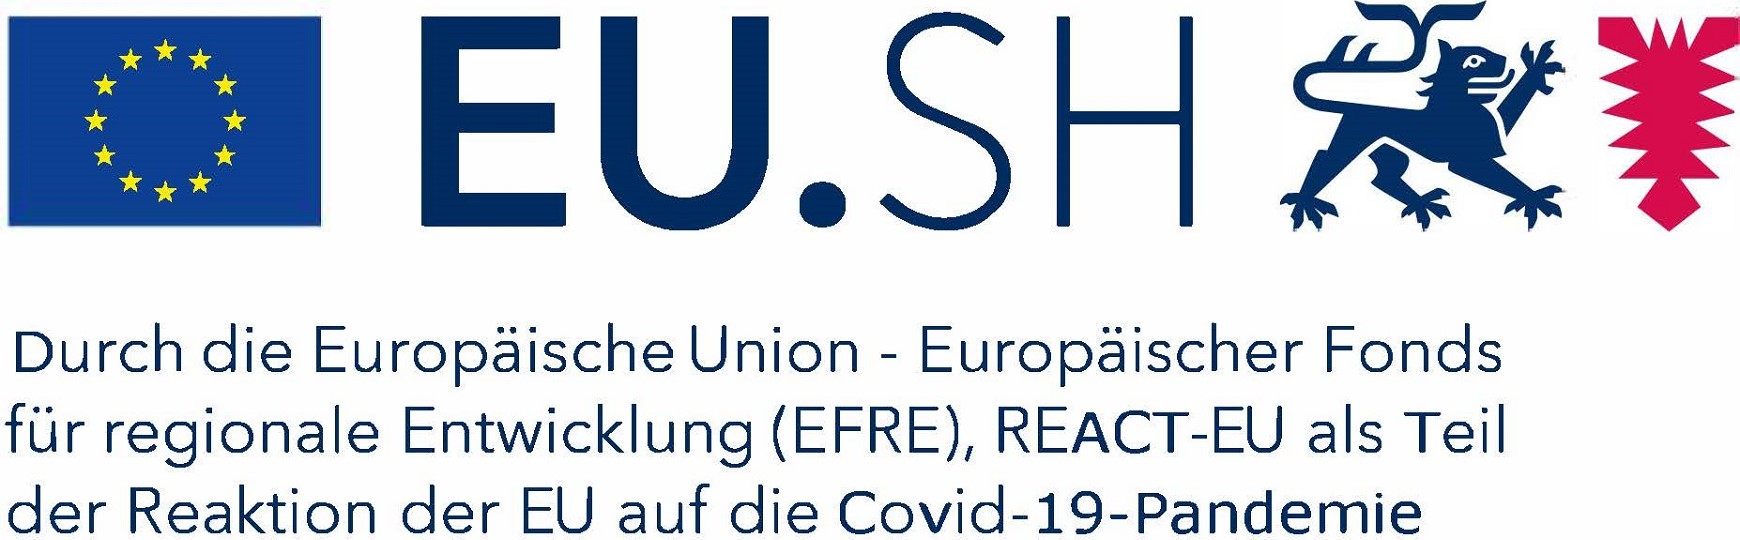 SH_EU-Logo_EFRE_REACT 1740x540.jpg